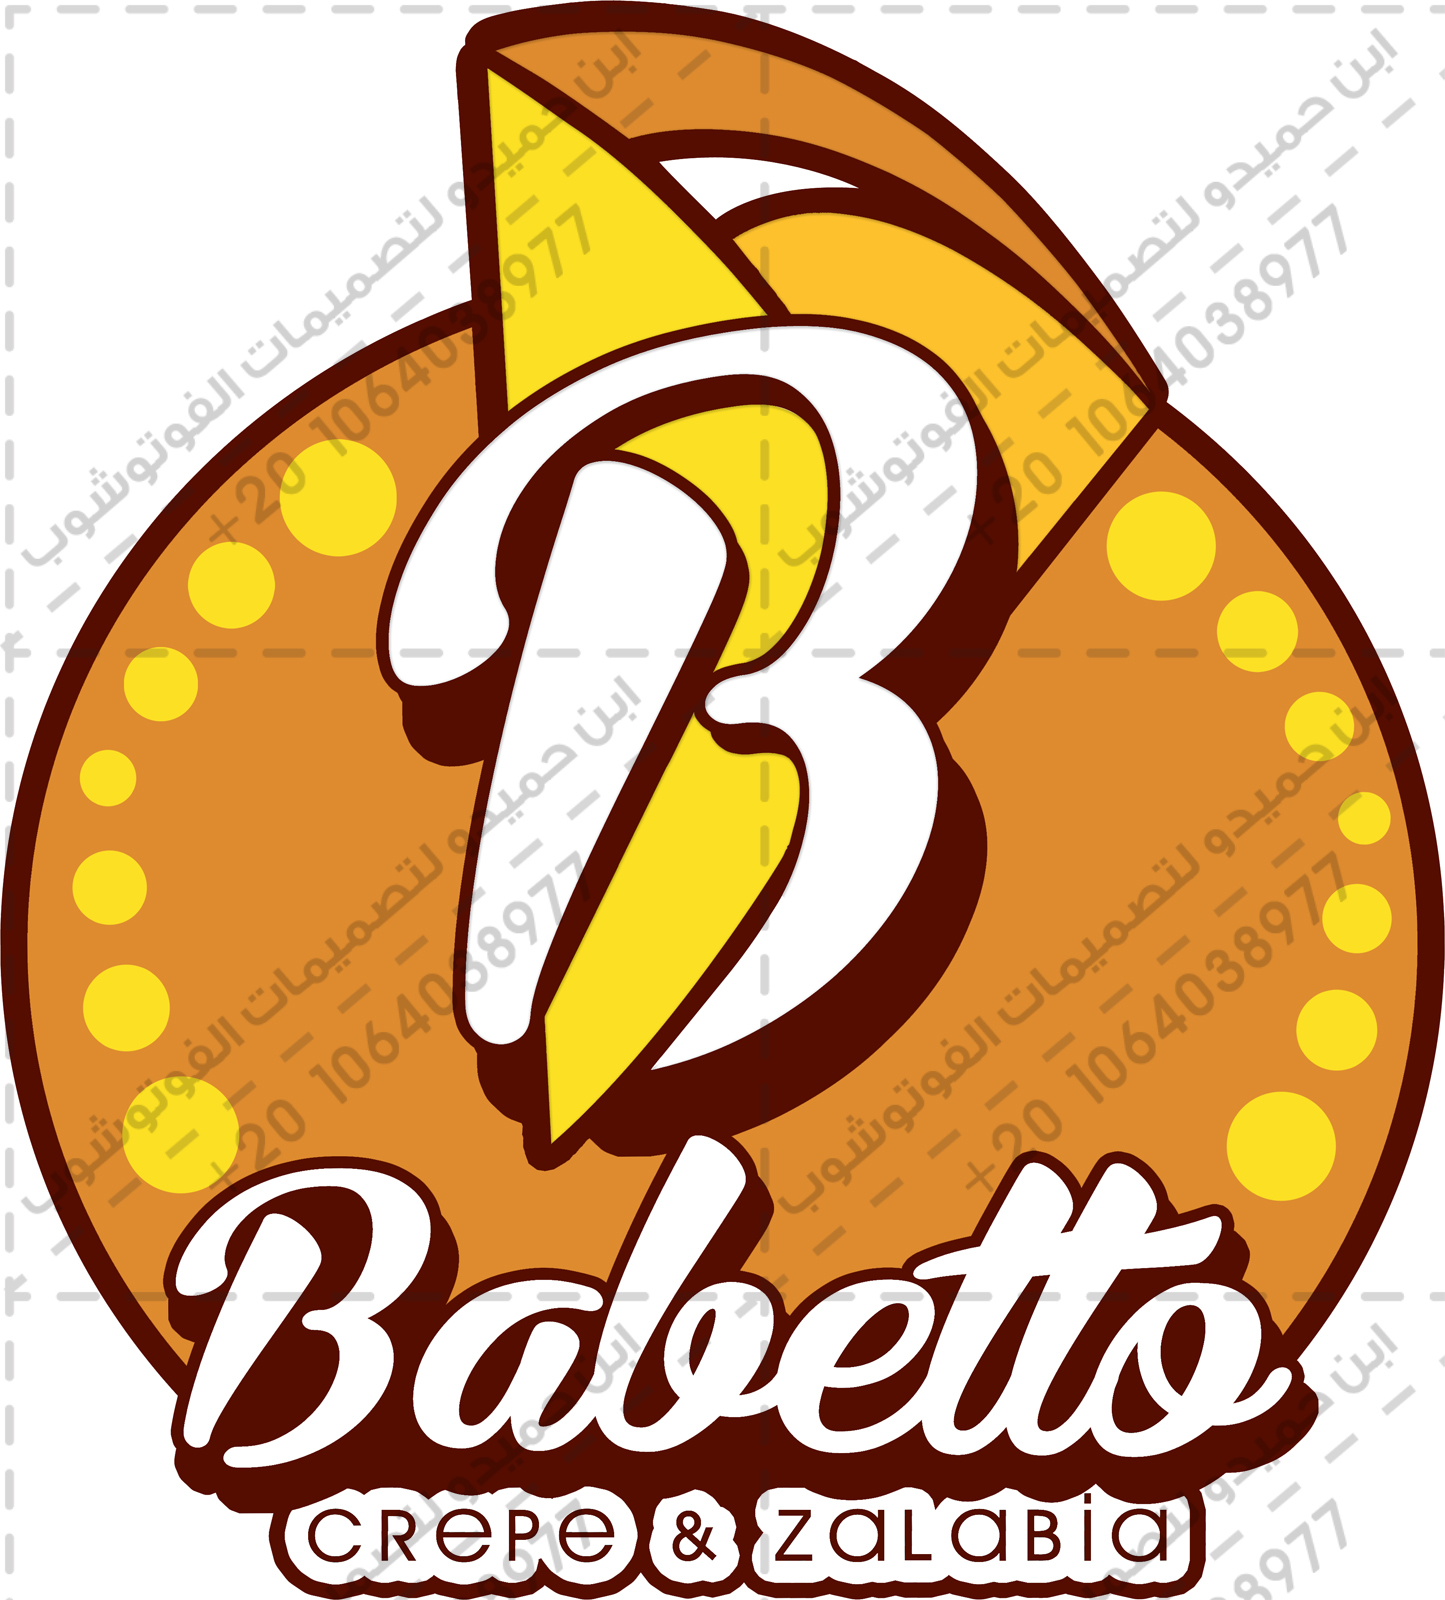  تصميم شعار مطعم بابيتو babetto logo - لوجو مطعم بابيتو كريب وزلابية - ابن حميدو لتصميمات الفوتوشوب  57902-1485866616-Babetto-Logo